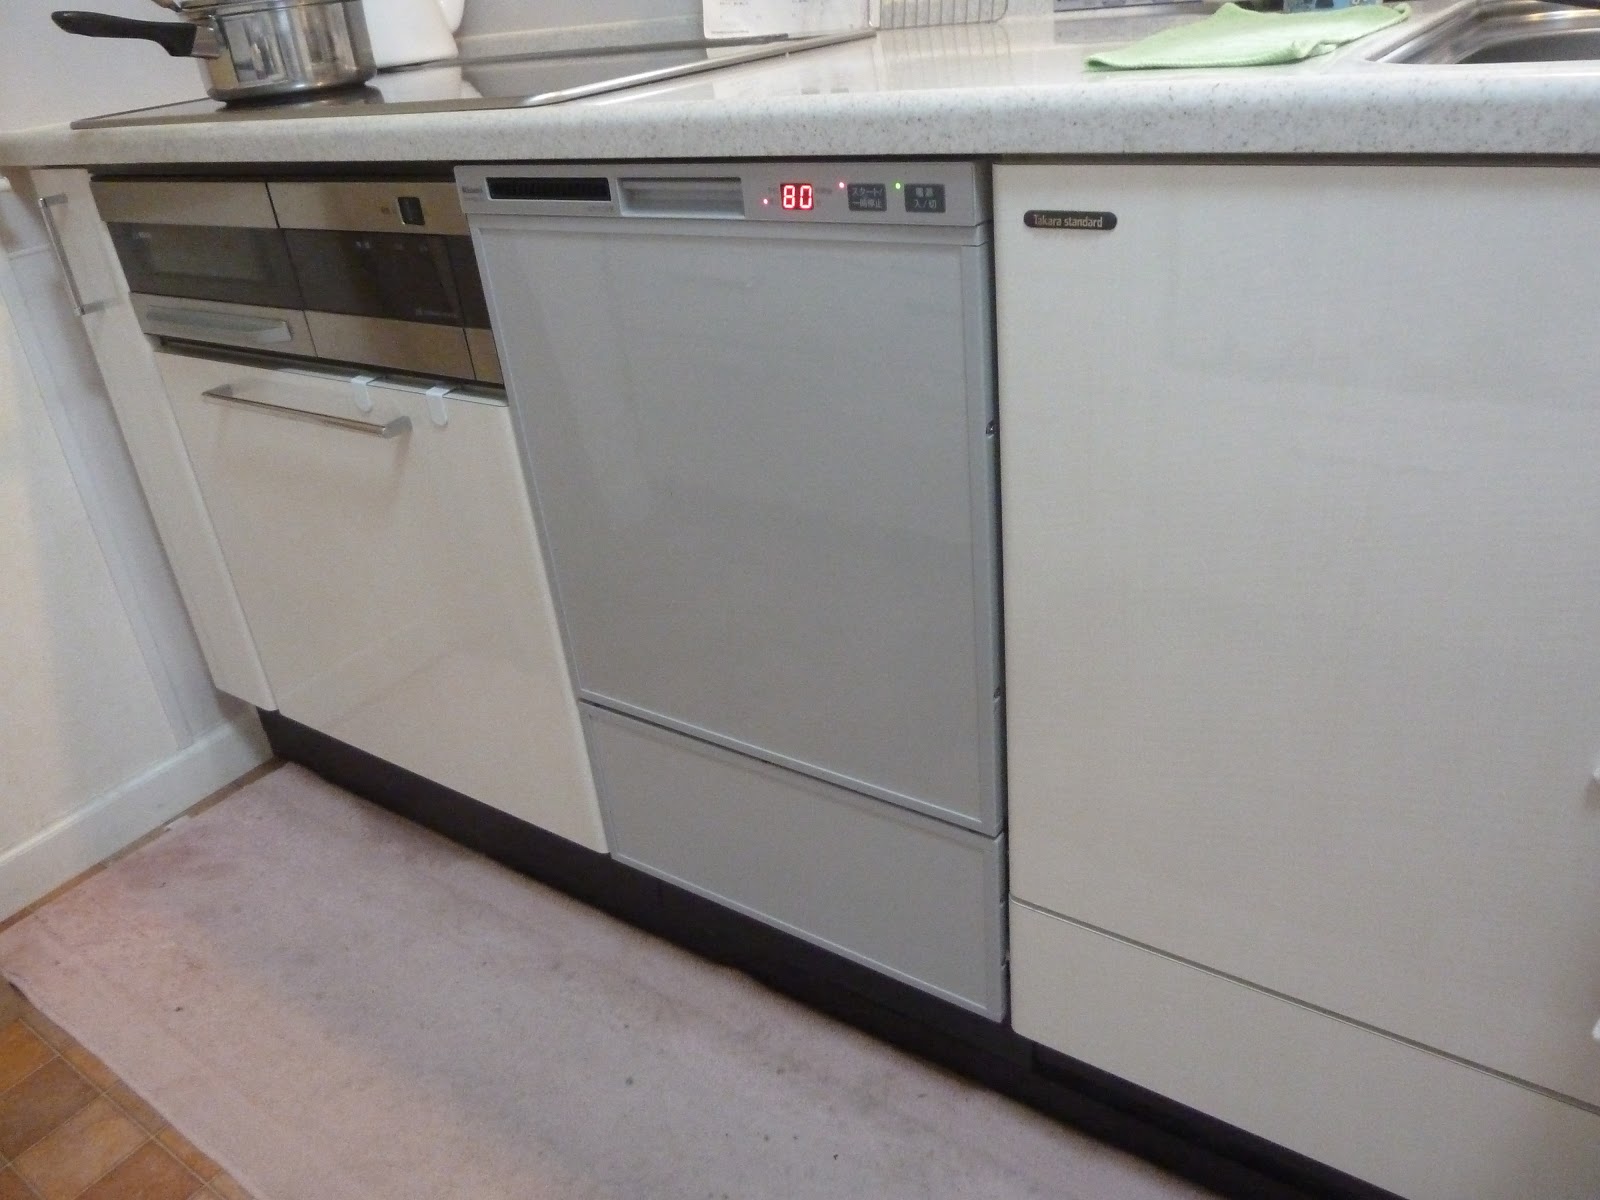  工事費込セット 食器洗い乾燥機 リンナイ RSW-F402C-SV フロントオープン - 1